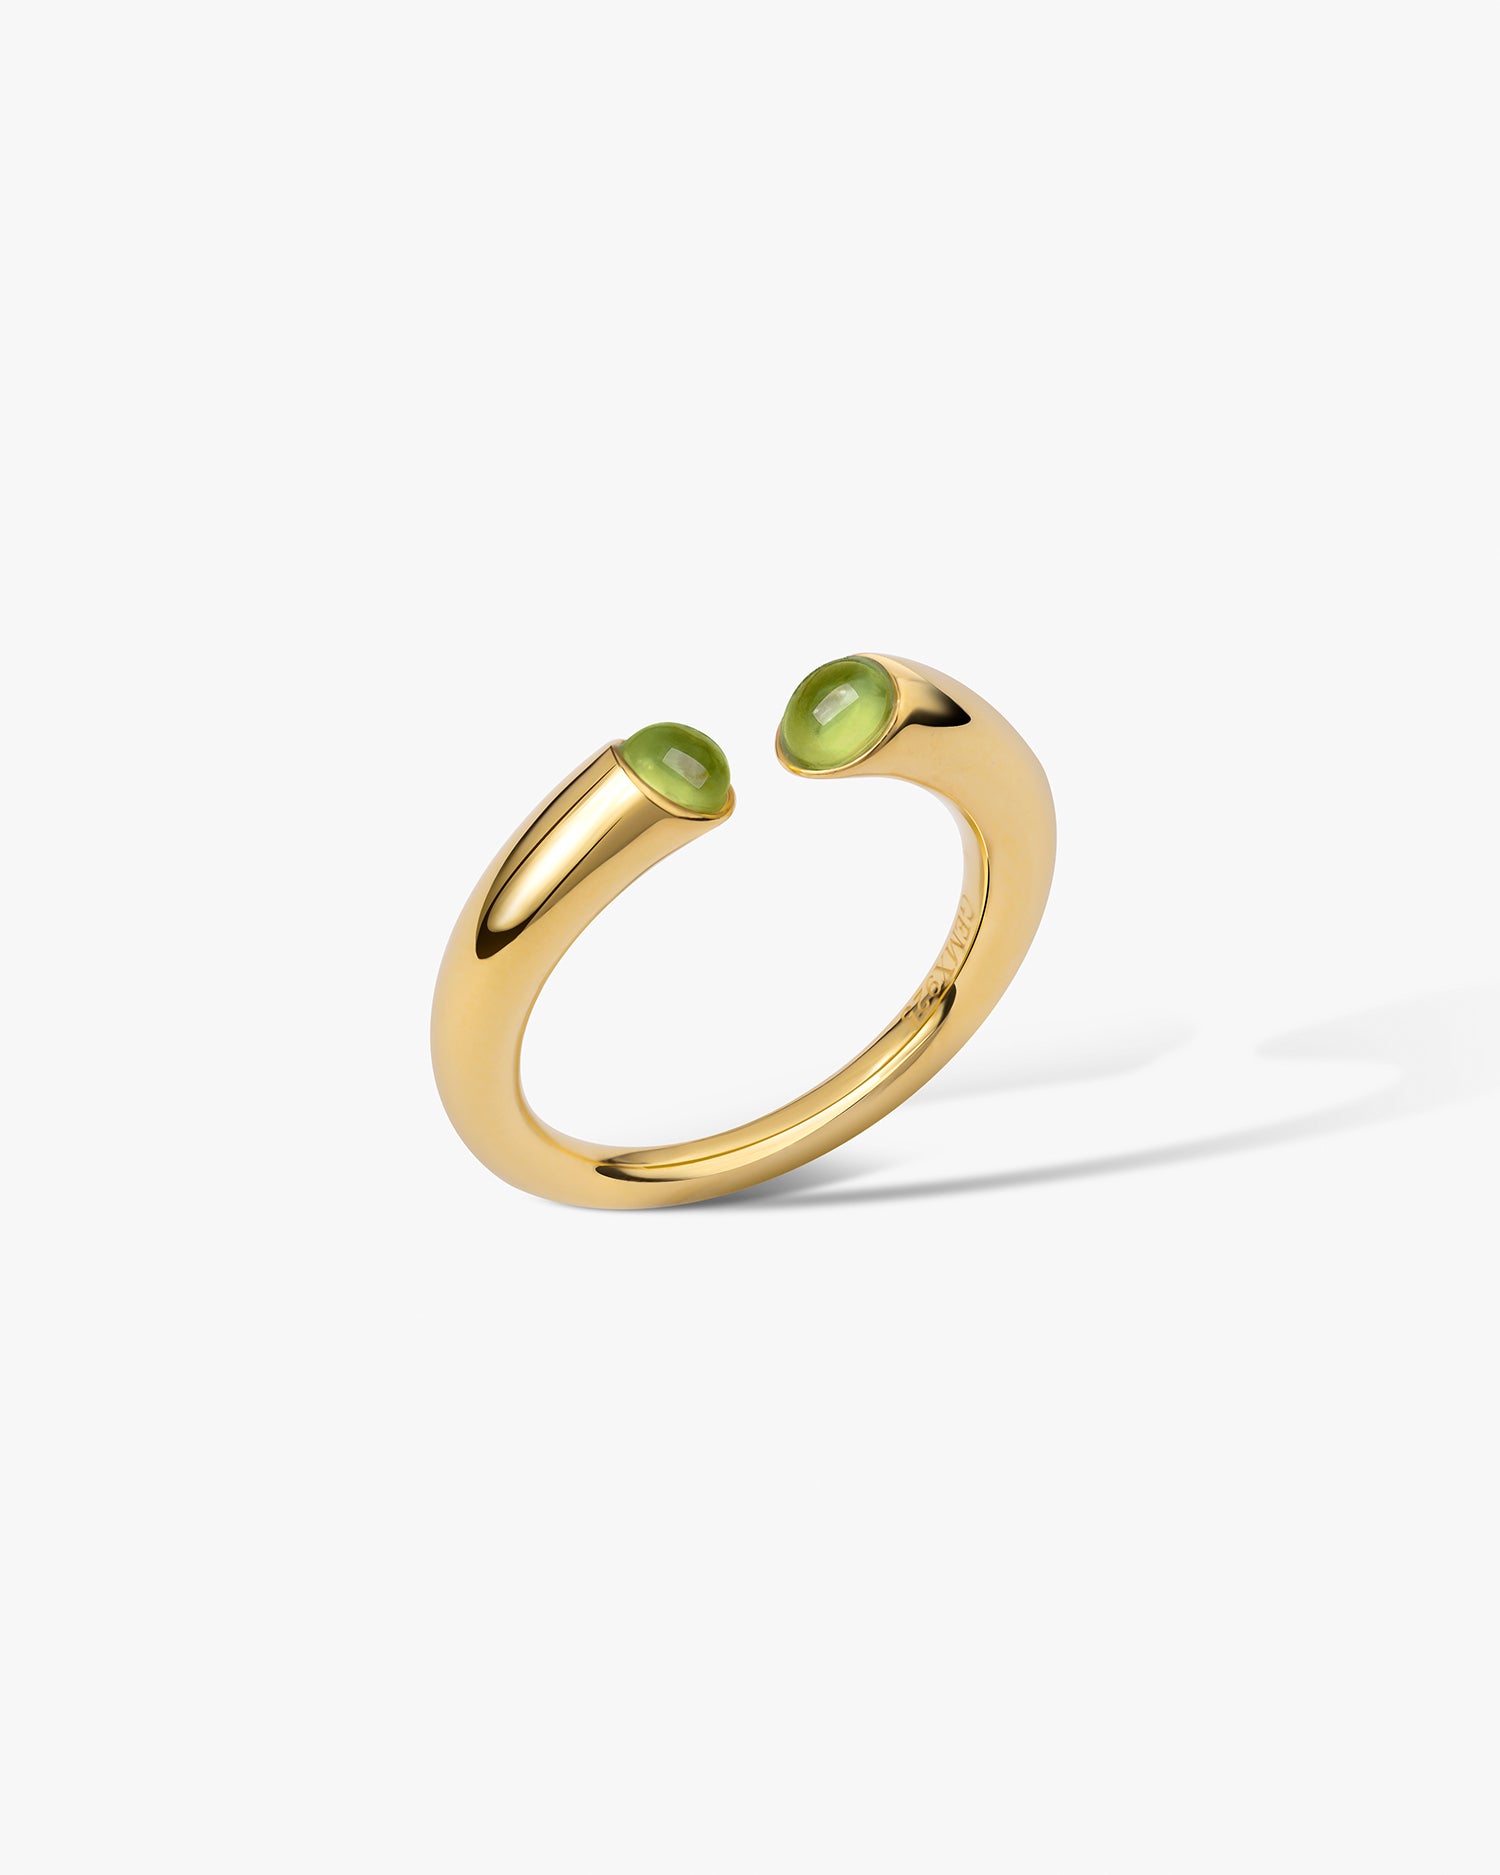 Star Wars Rebel Alliance Inspired Matching Wedding Ring Set Star Wars Ring  Geek Engagement Ring Star Wars Jewelry - Etsy